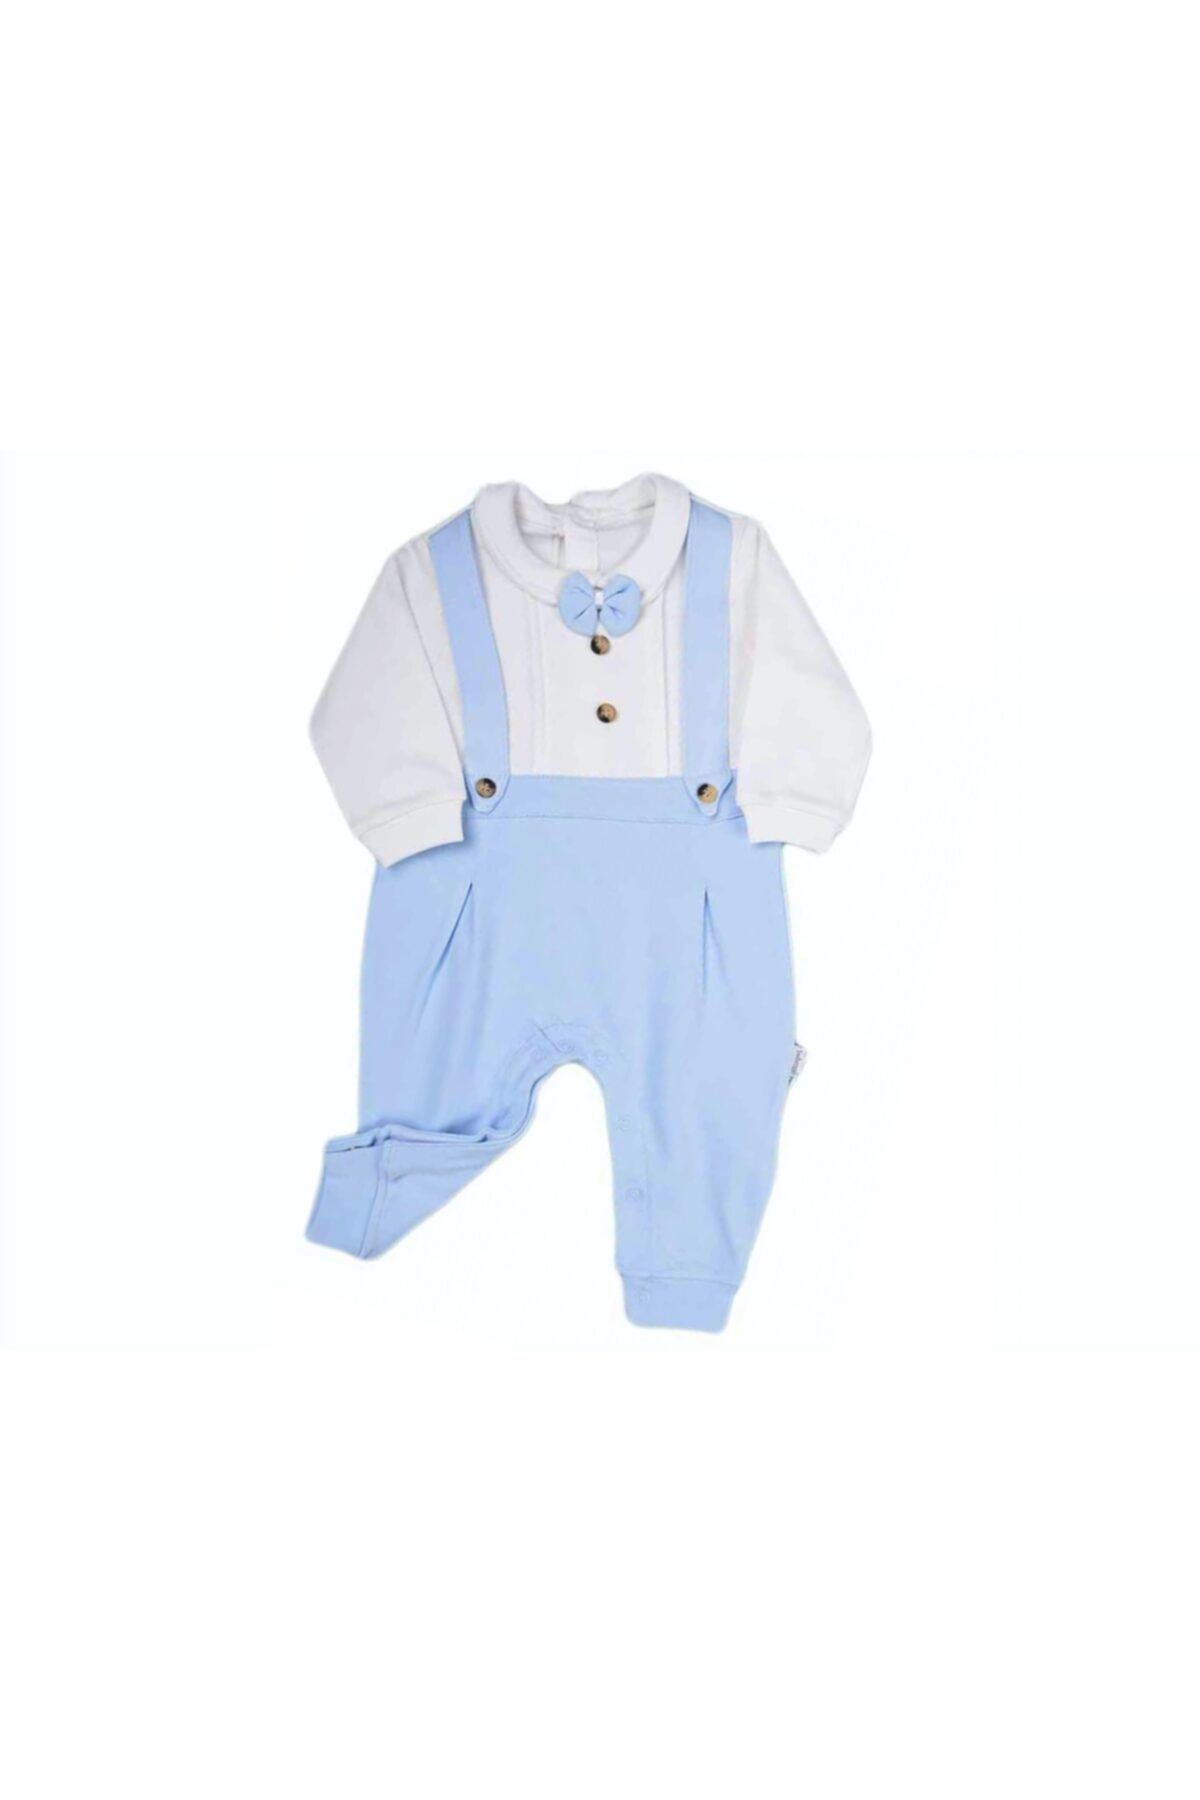 Bebengo Erkek Bebek Mavi Askılı Patiksiz Tulum 3030